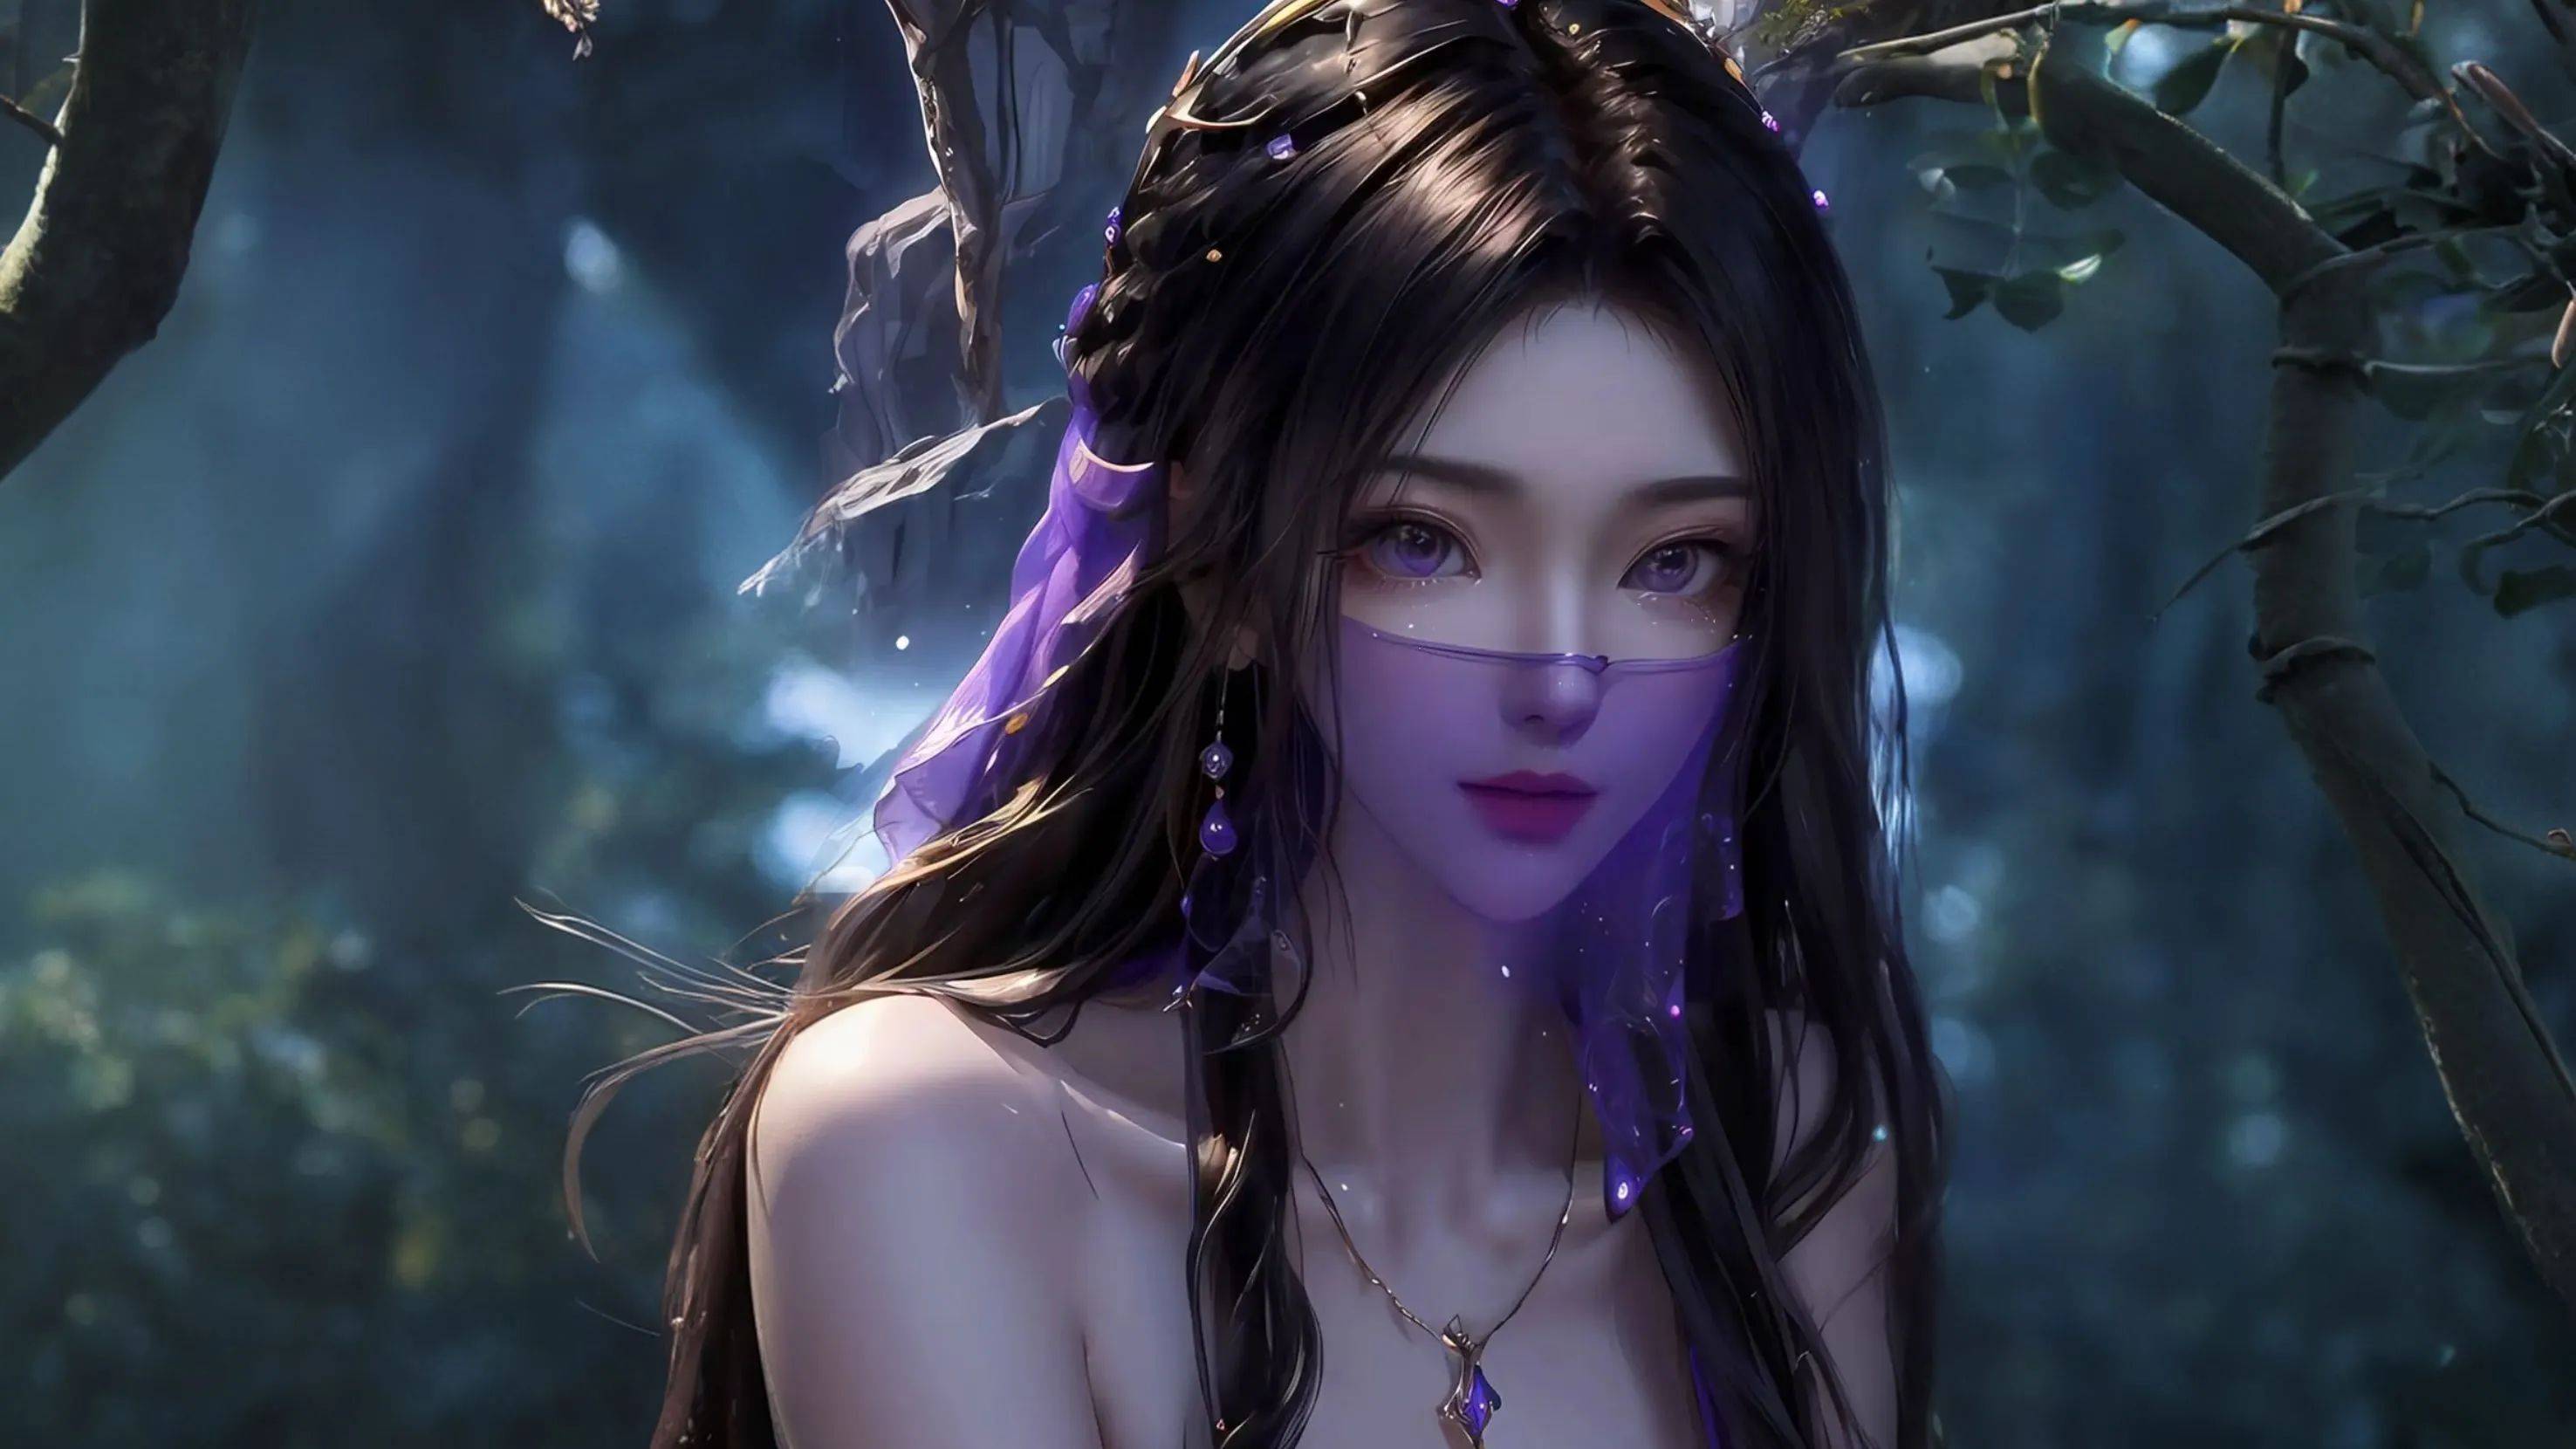 闻乱星海第一美女,紫灵仙子,拥有倾国倾城之貌,被誉为乱星海第一美女